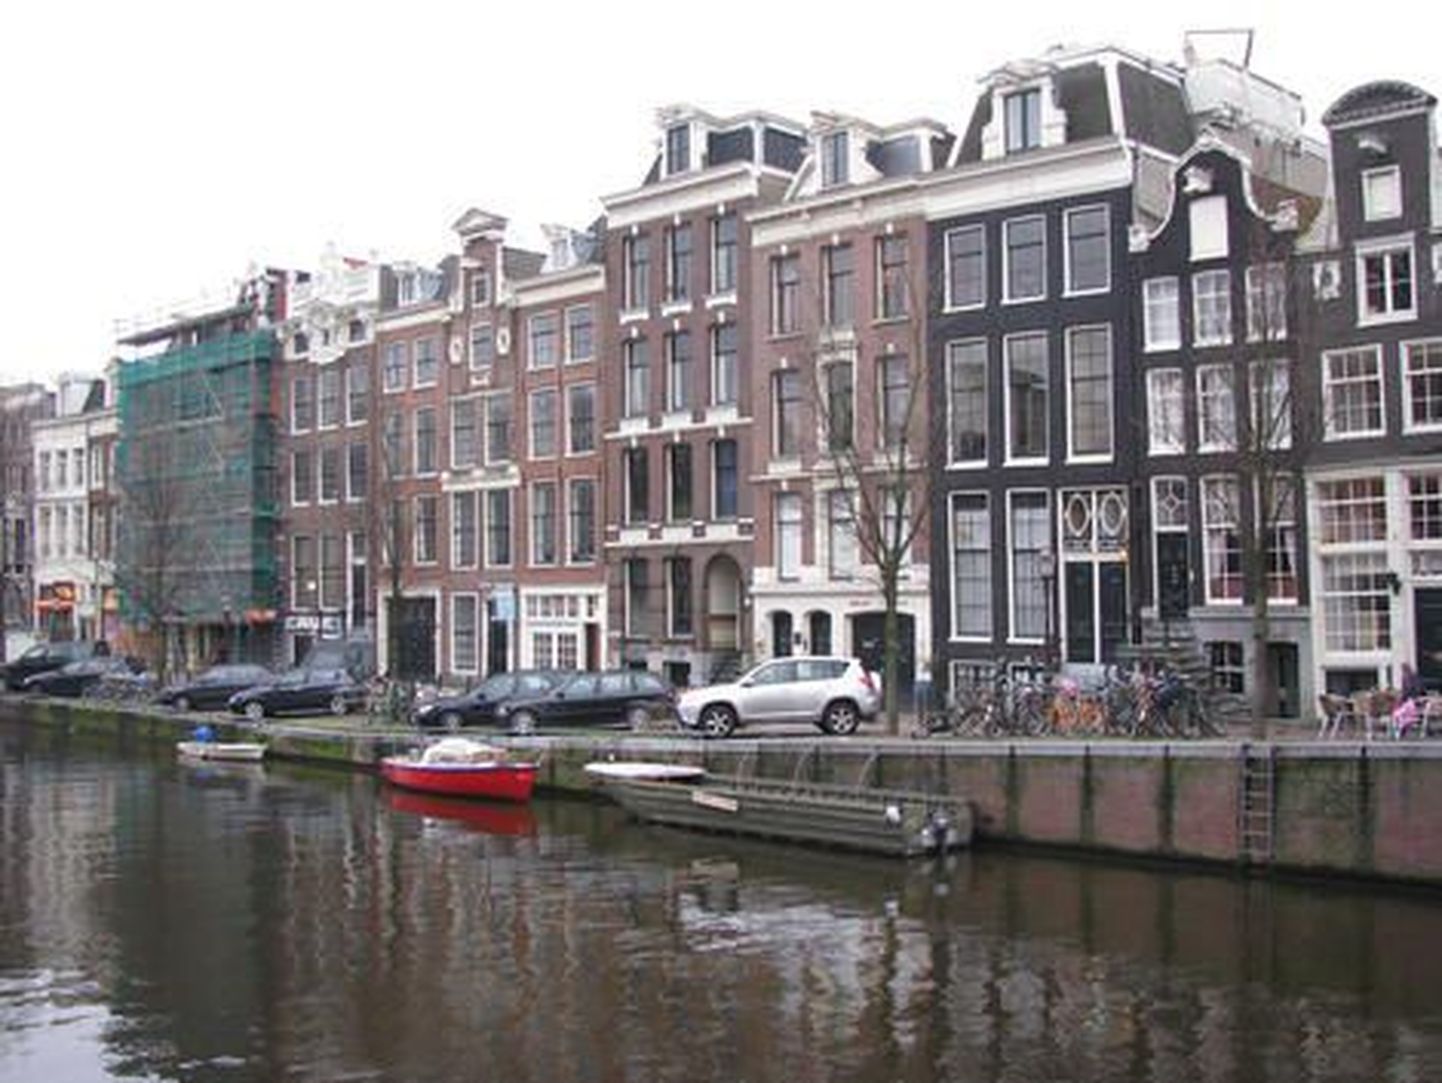 Amsterdami südalinna iseloomustavad kanalid, nukumajad nende kallastel ja jalgrattad. Et maad vähe ja see on ülikallis, on trepid imekitsad ja kõik suuremad asjad toimetatakse kõrgematele korrustele tõstuki abil.